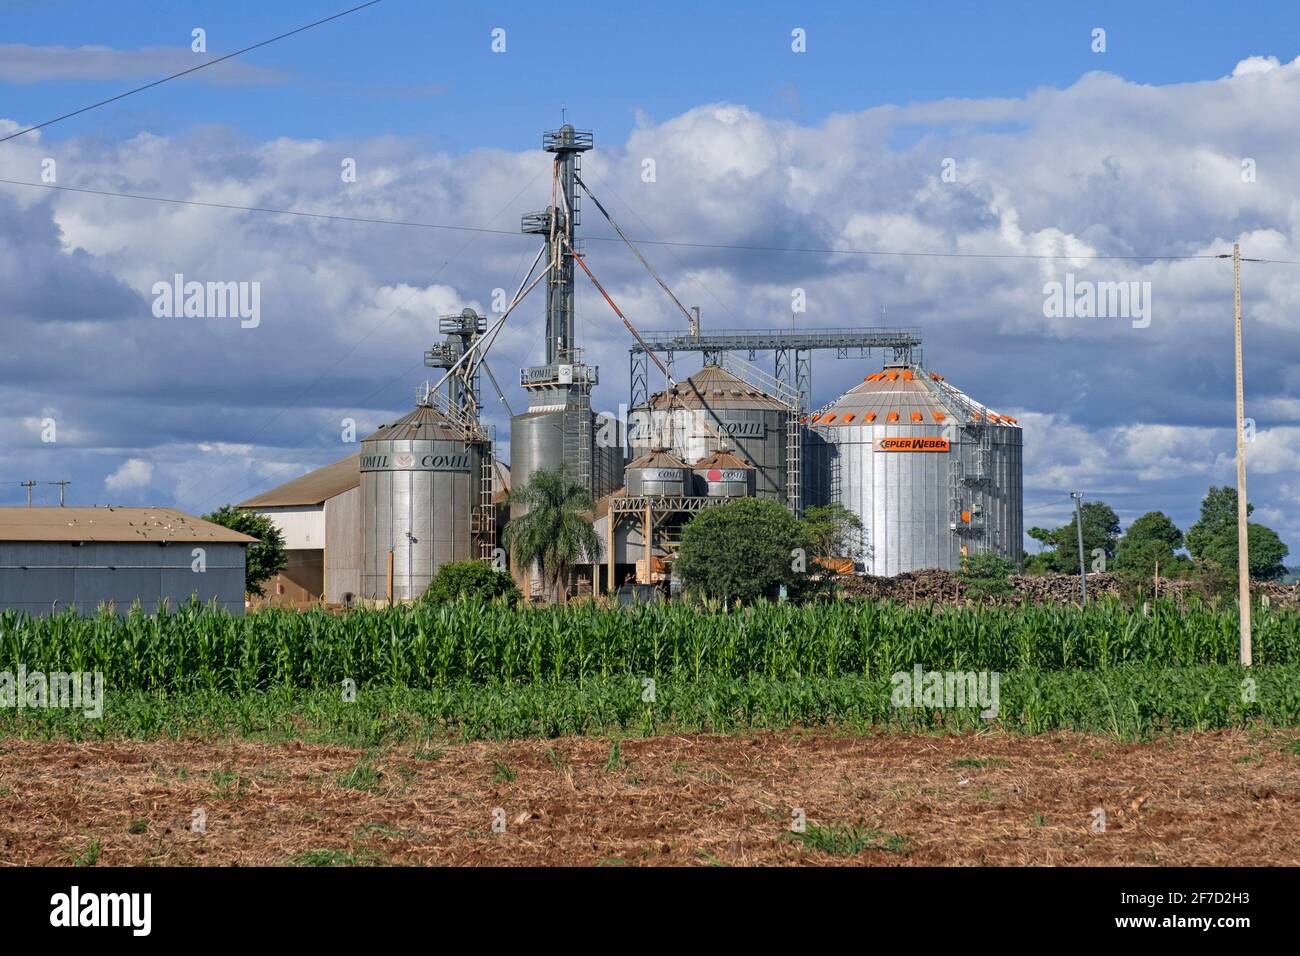 Silos de cornfield et de comil pour stocker les graines de soja récoltées / soja / soja dans la campagne Alto Paraná, Paraguay Banque D'Images